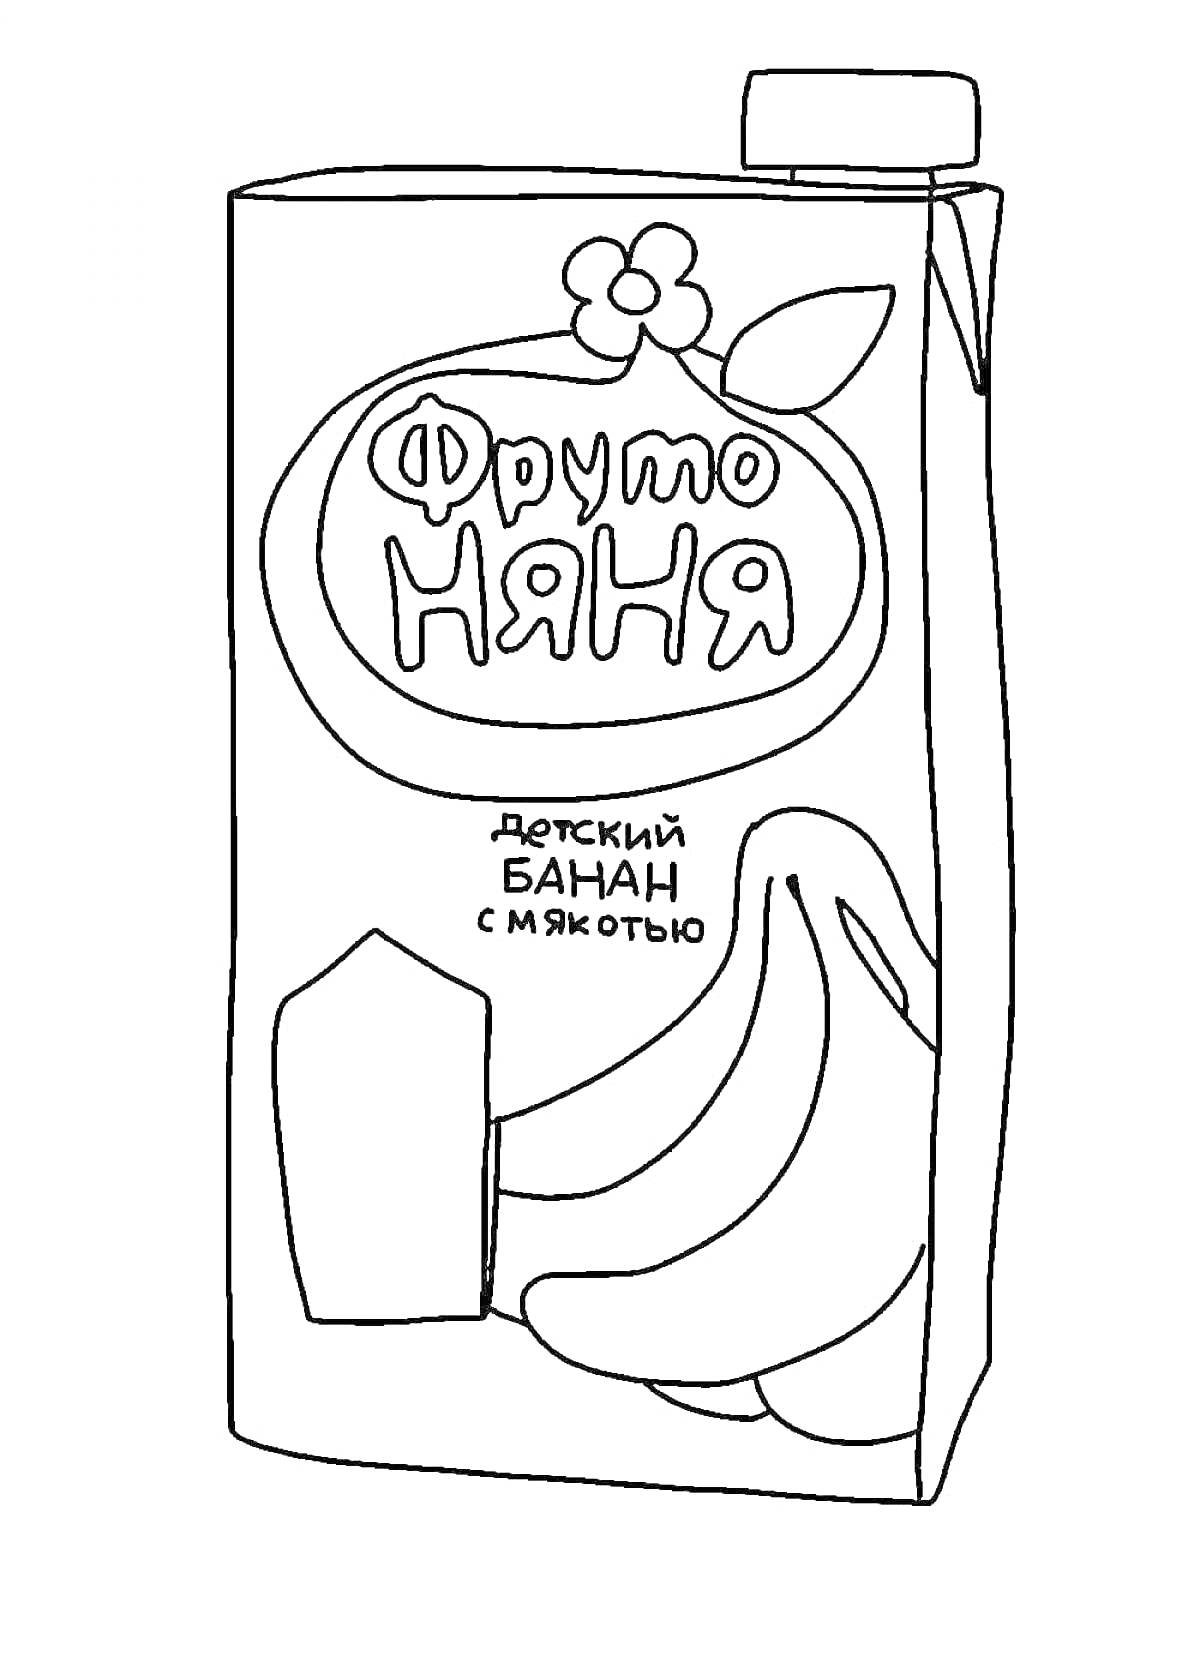 Раскраска Сок Фруто Няня, детский банан с мякотью